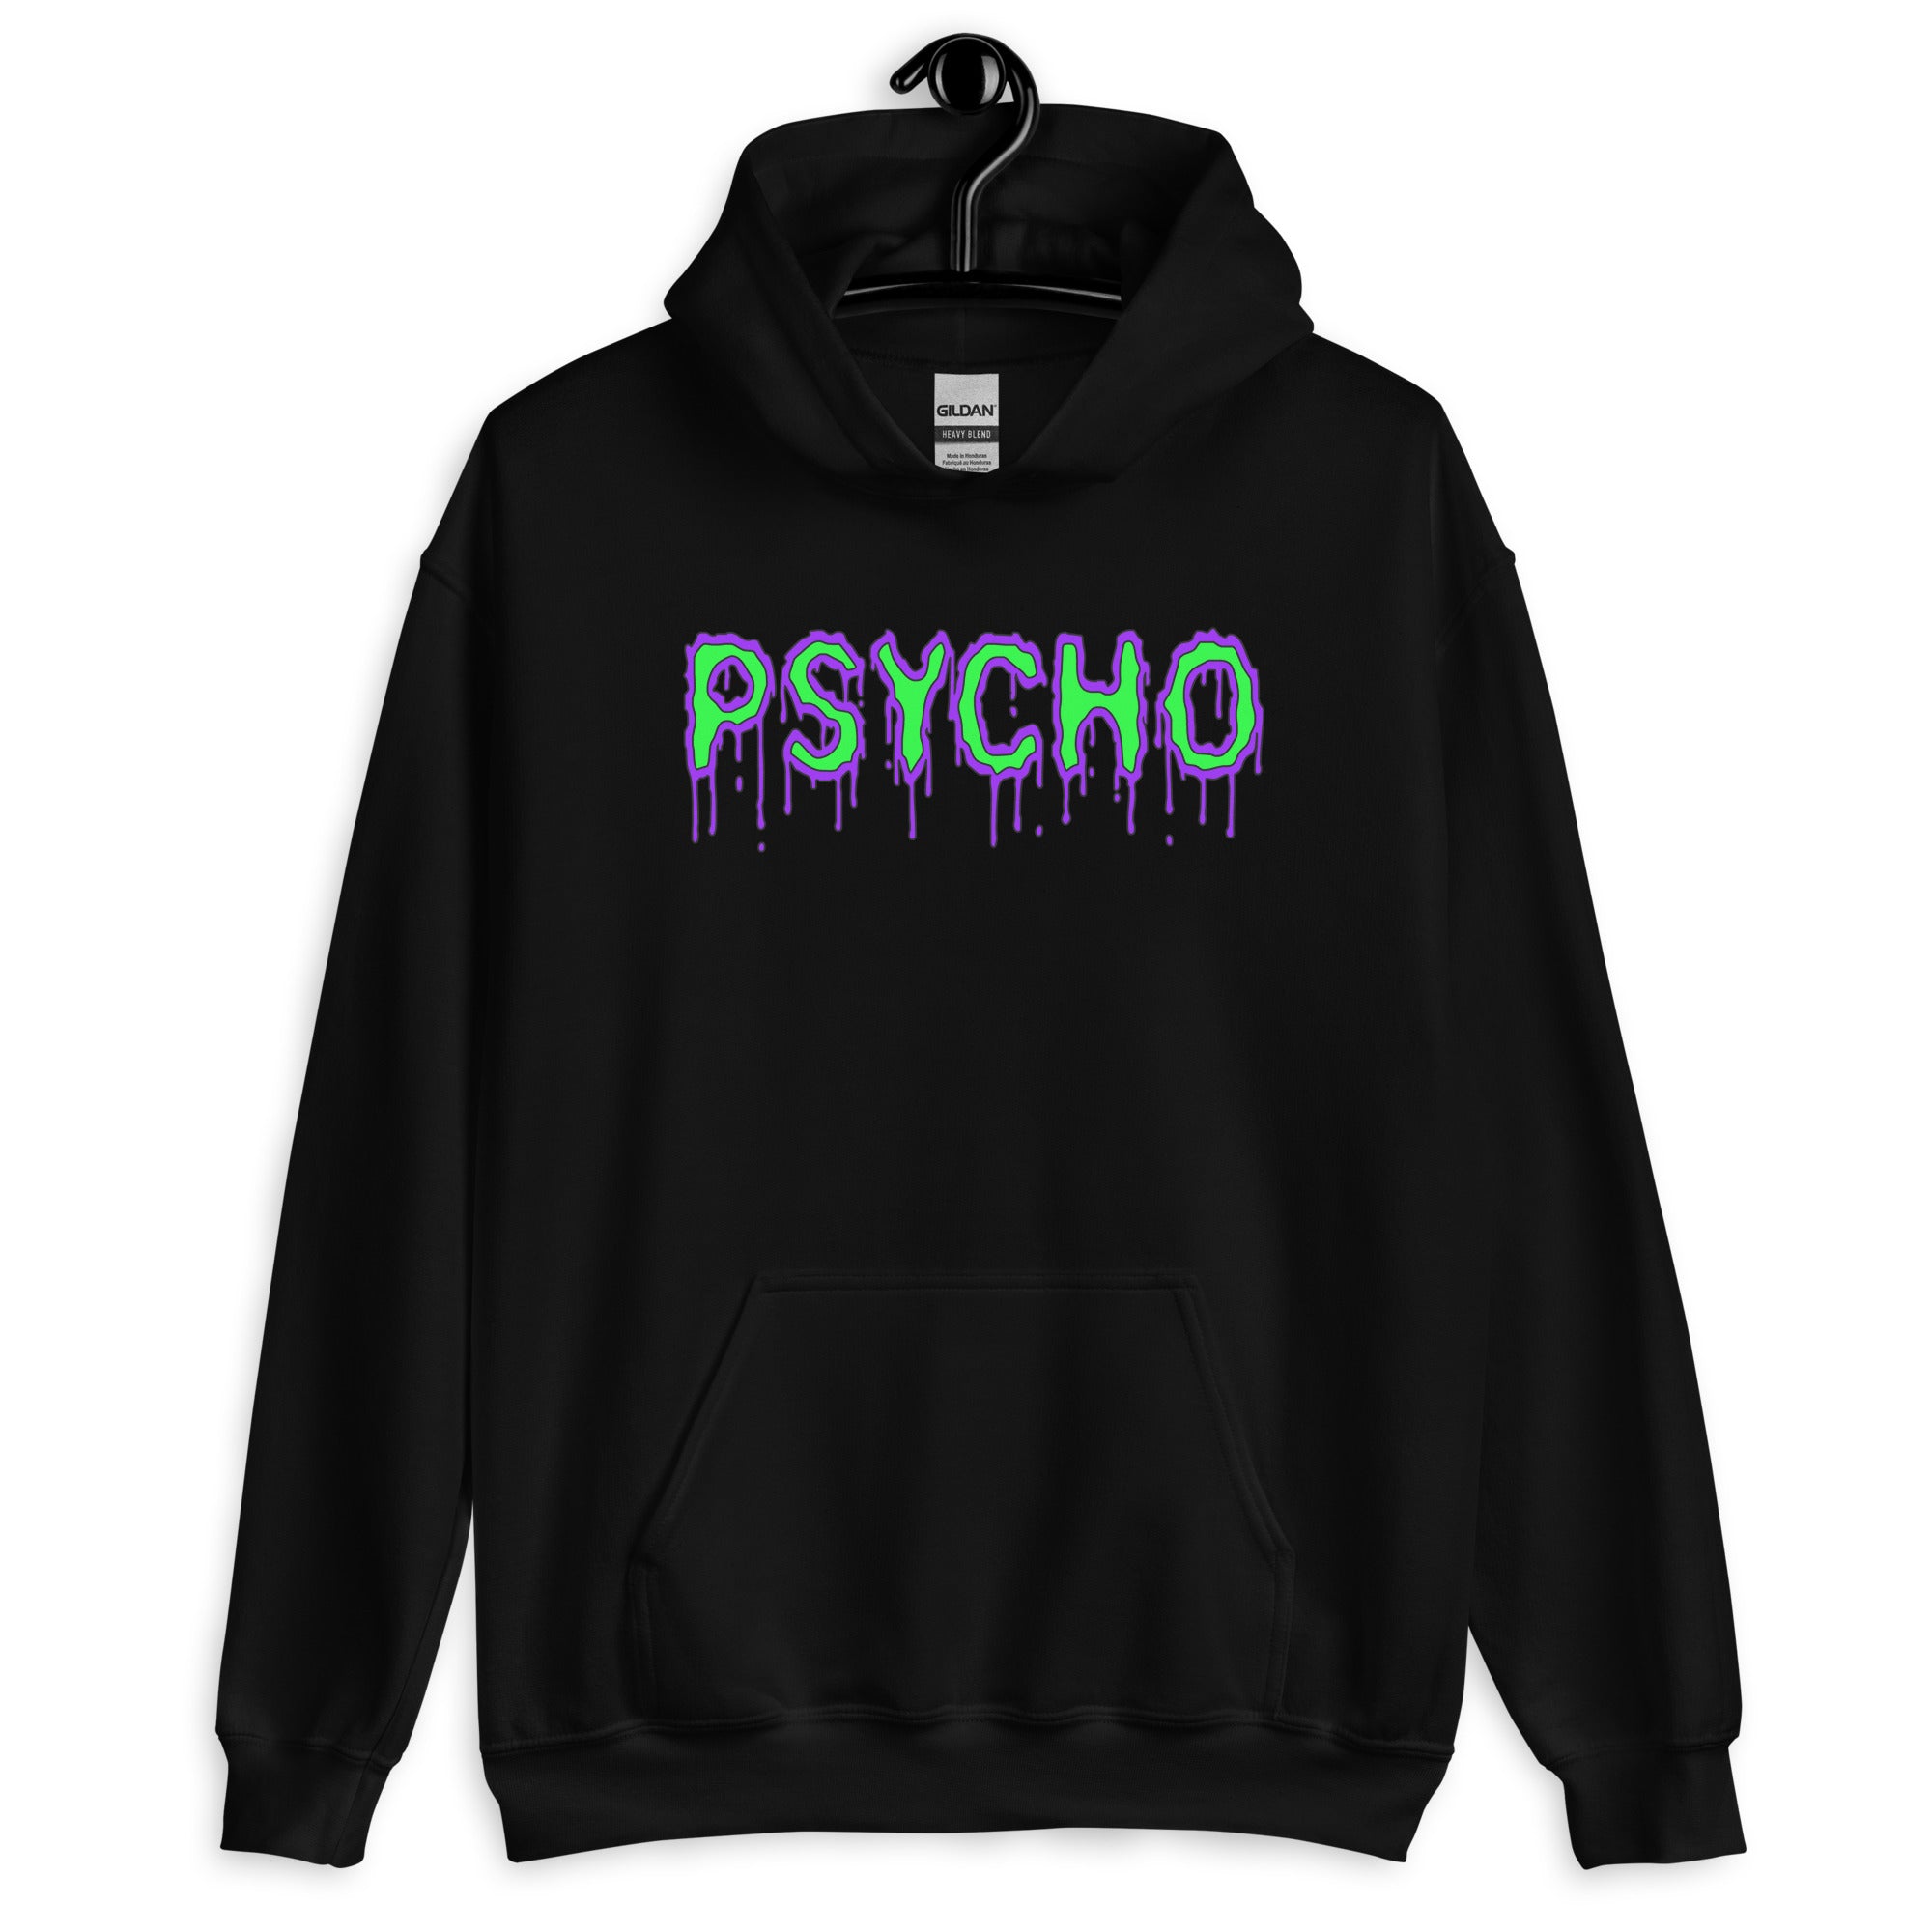 Psycho Mental Personality Unisex Hoodie Sweatshirt